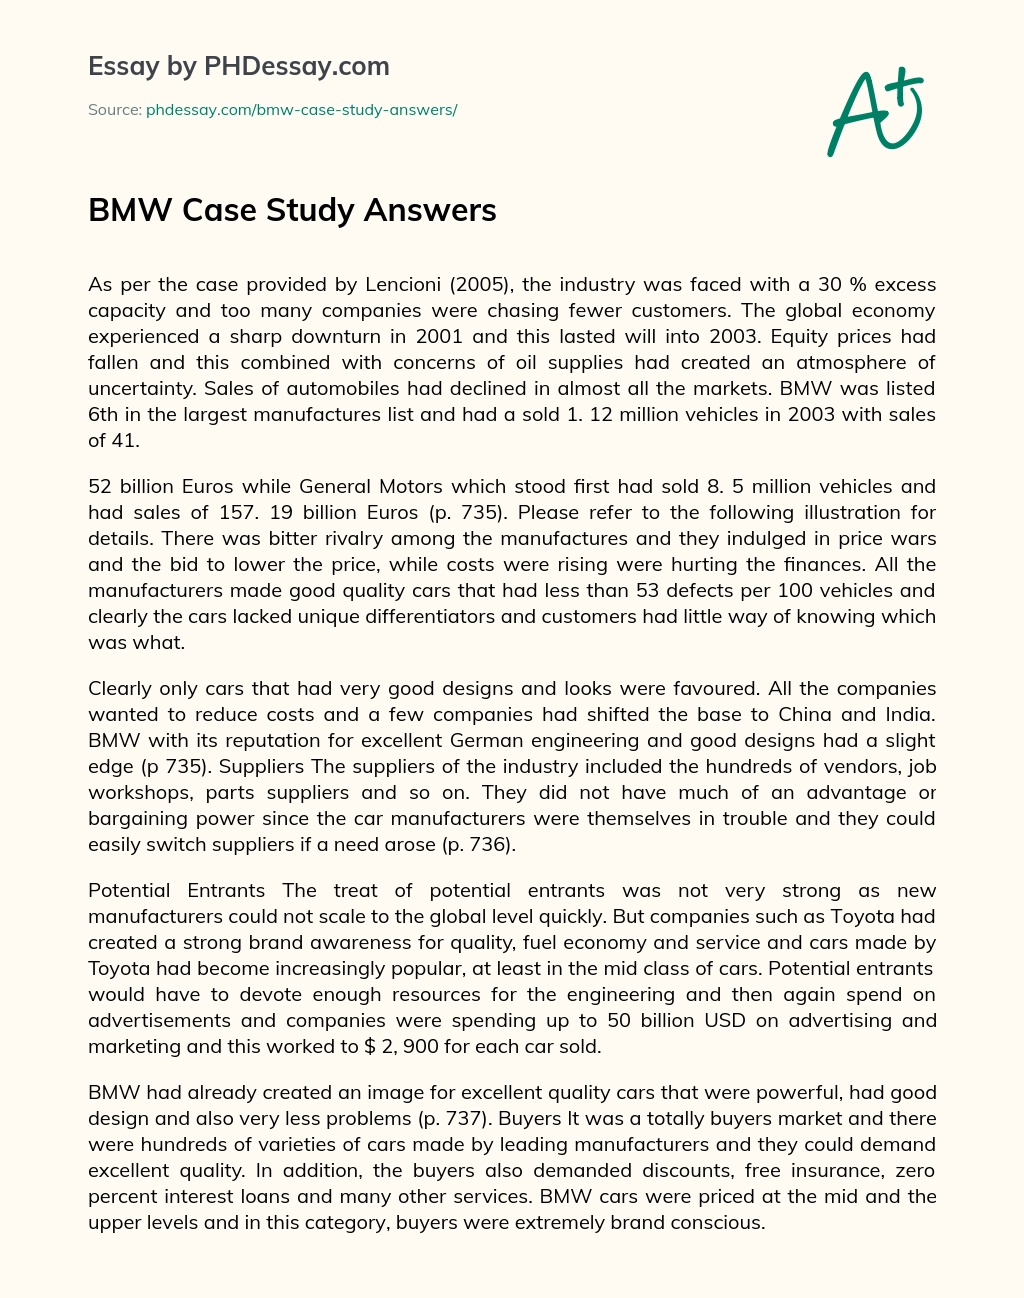 BMW Case Study Answers essay